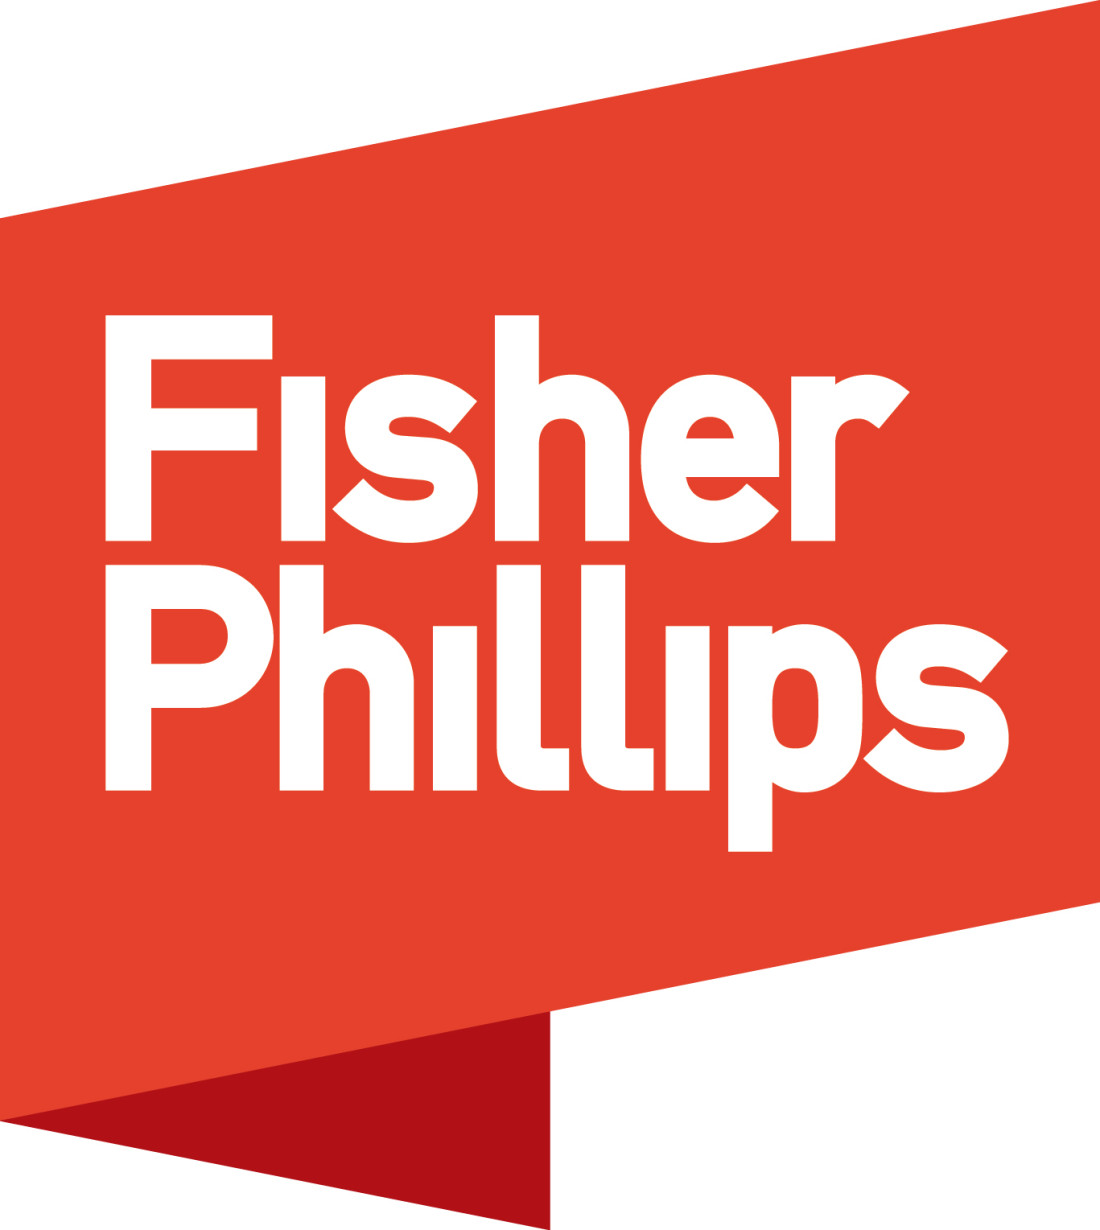 Fisher Phillips Logo